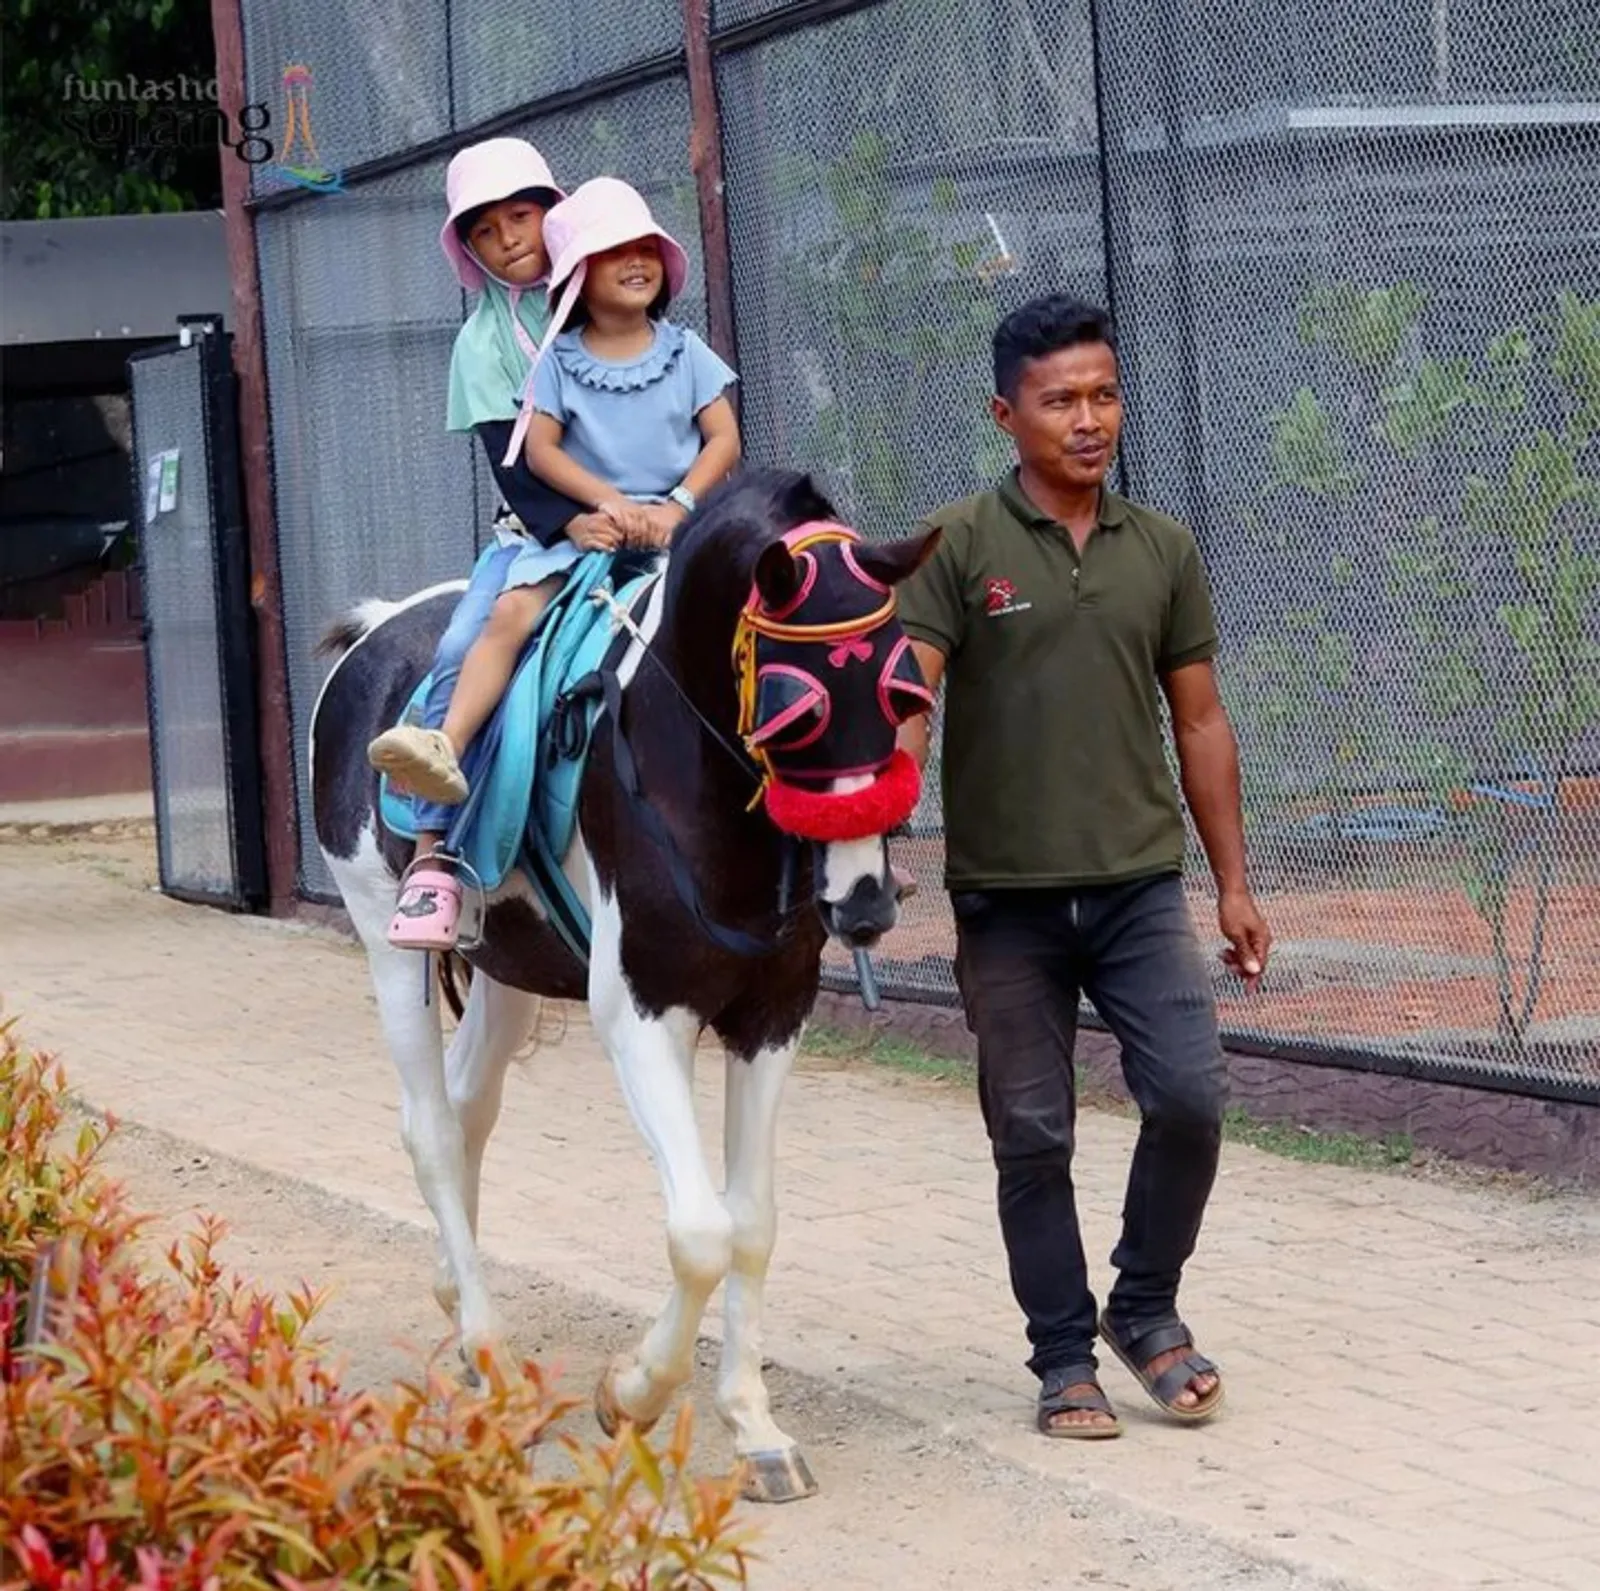 Elite Park Zoo Serang: Lokasi, Jam Buka, & Harga Tiket Masuk